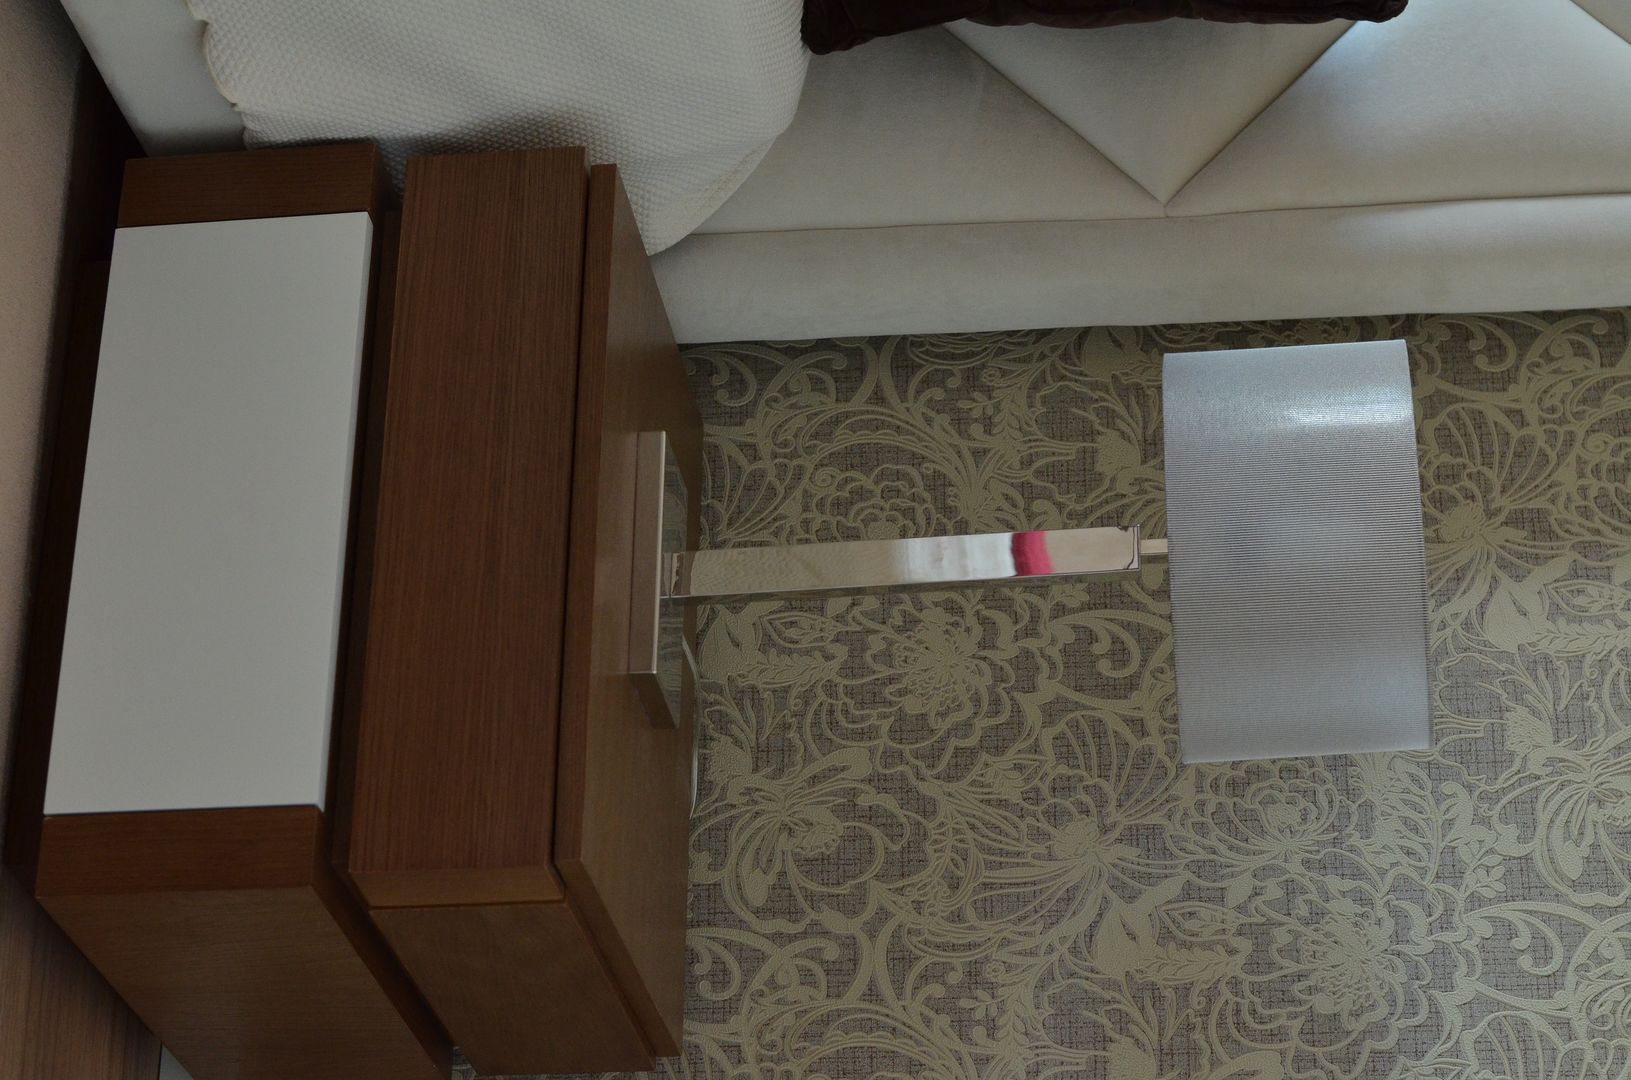 Quarto de Casal, STOOL INTERIORS STOOL INTERIORS Modern style bedroom Bedside tables